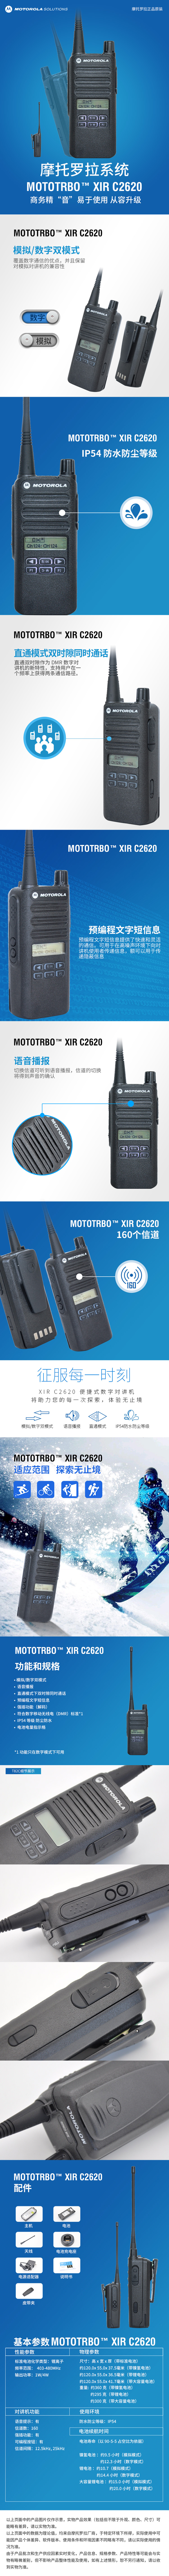 摩托罗拉(MOTOROLA) XIR C2620 数字对讲机 便携式全键盘可手动调频手台